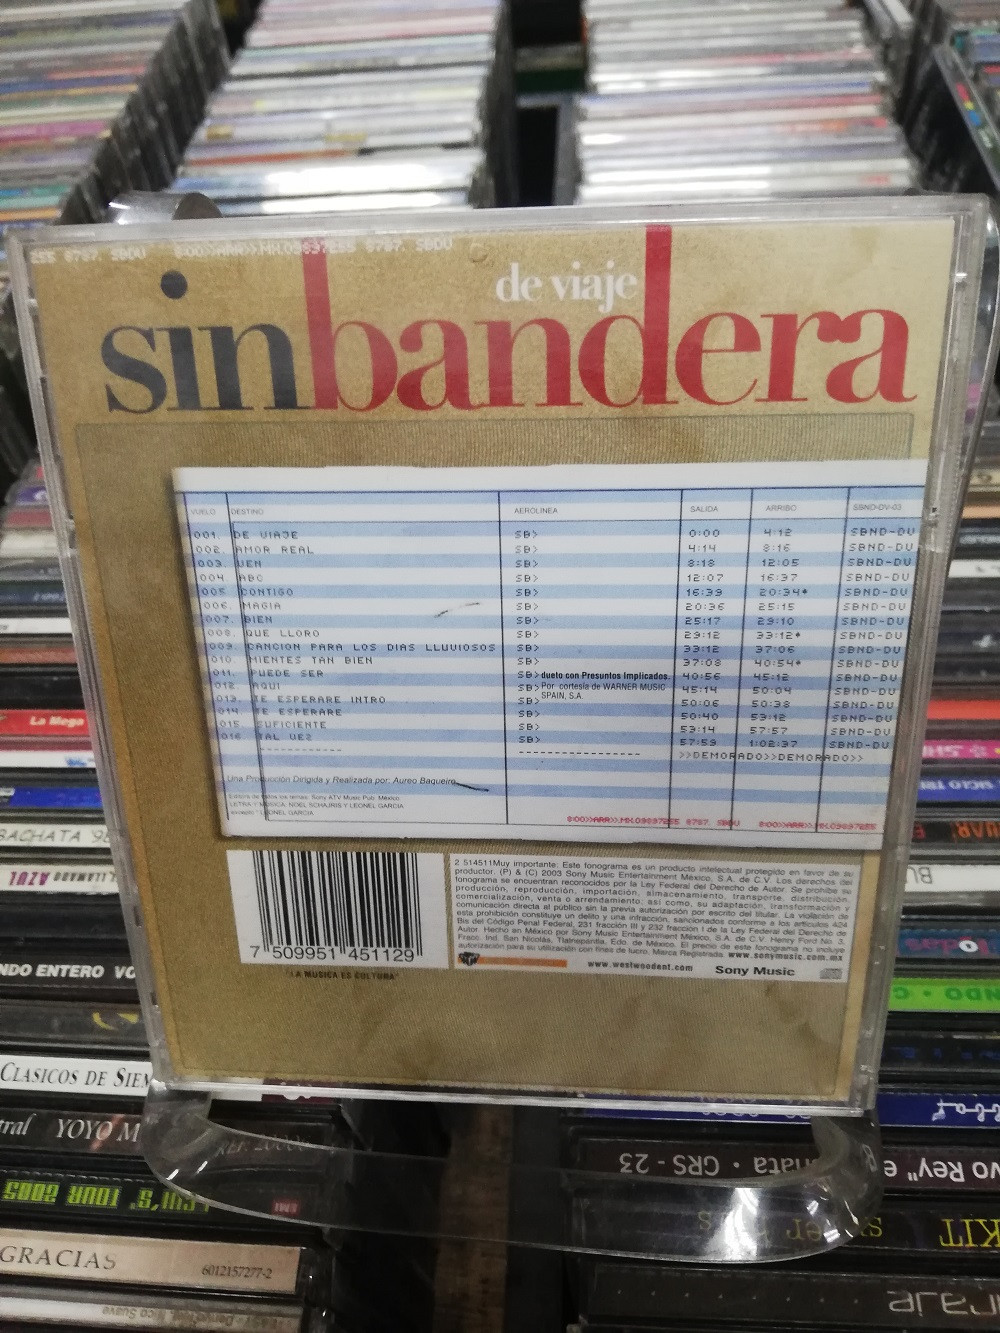 Imagen CD SIN BANDERA - DE VIAJE 2